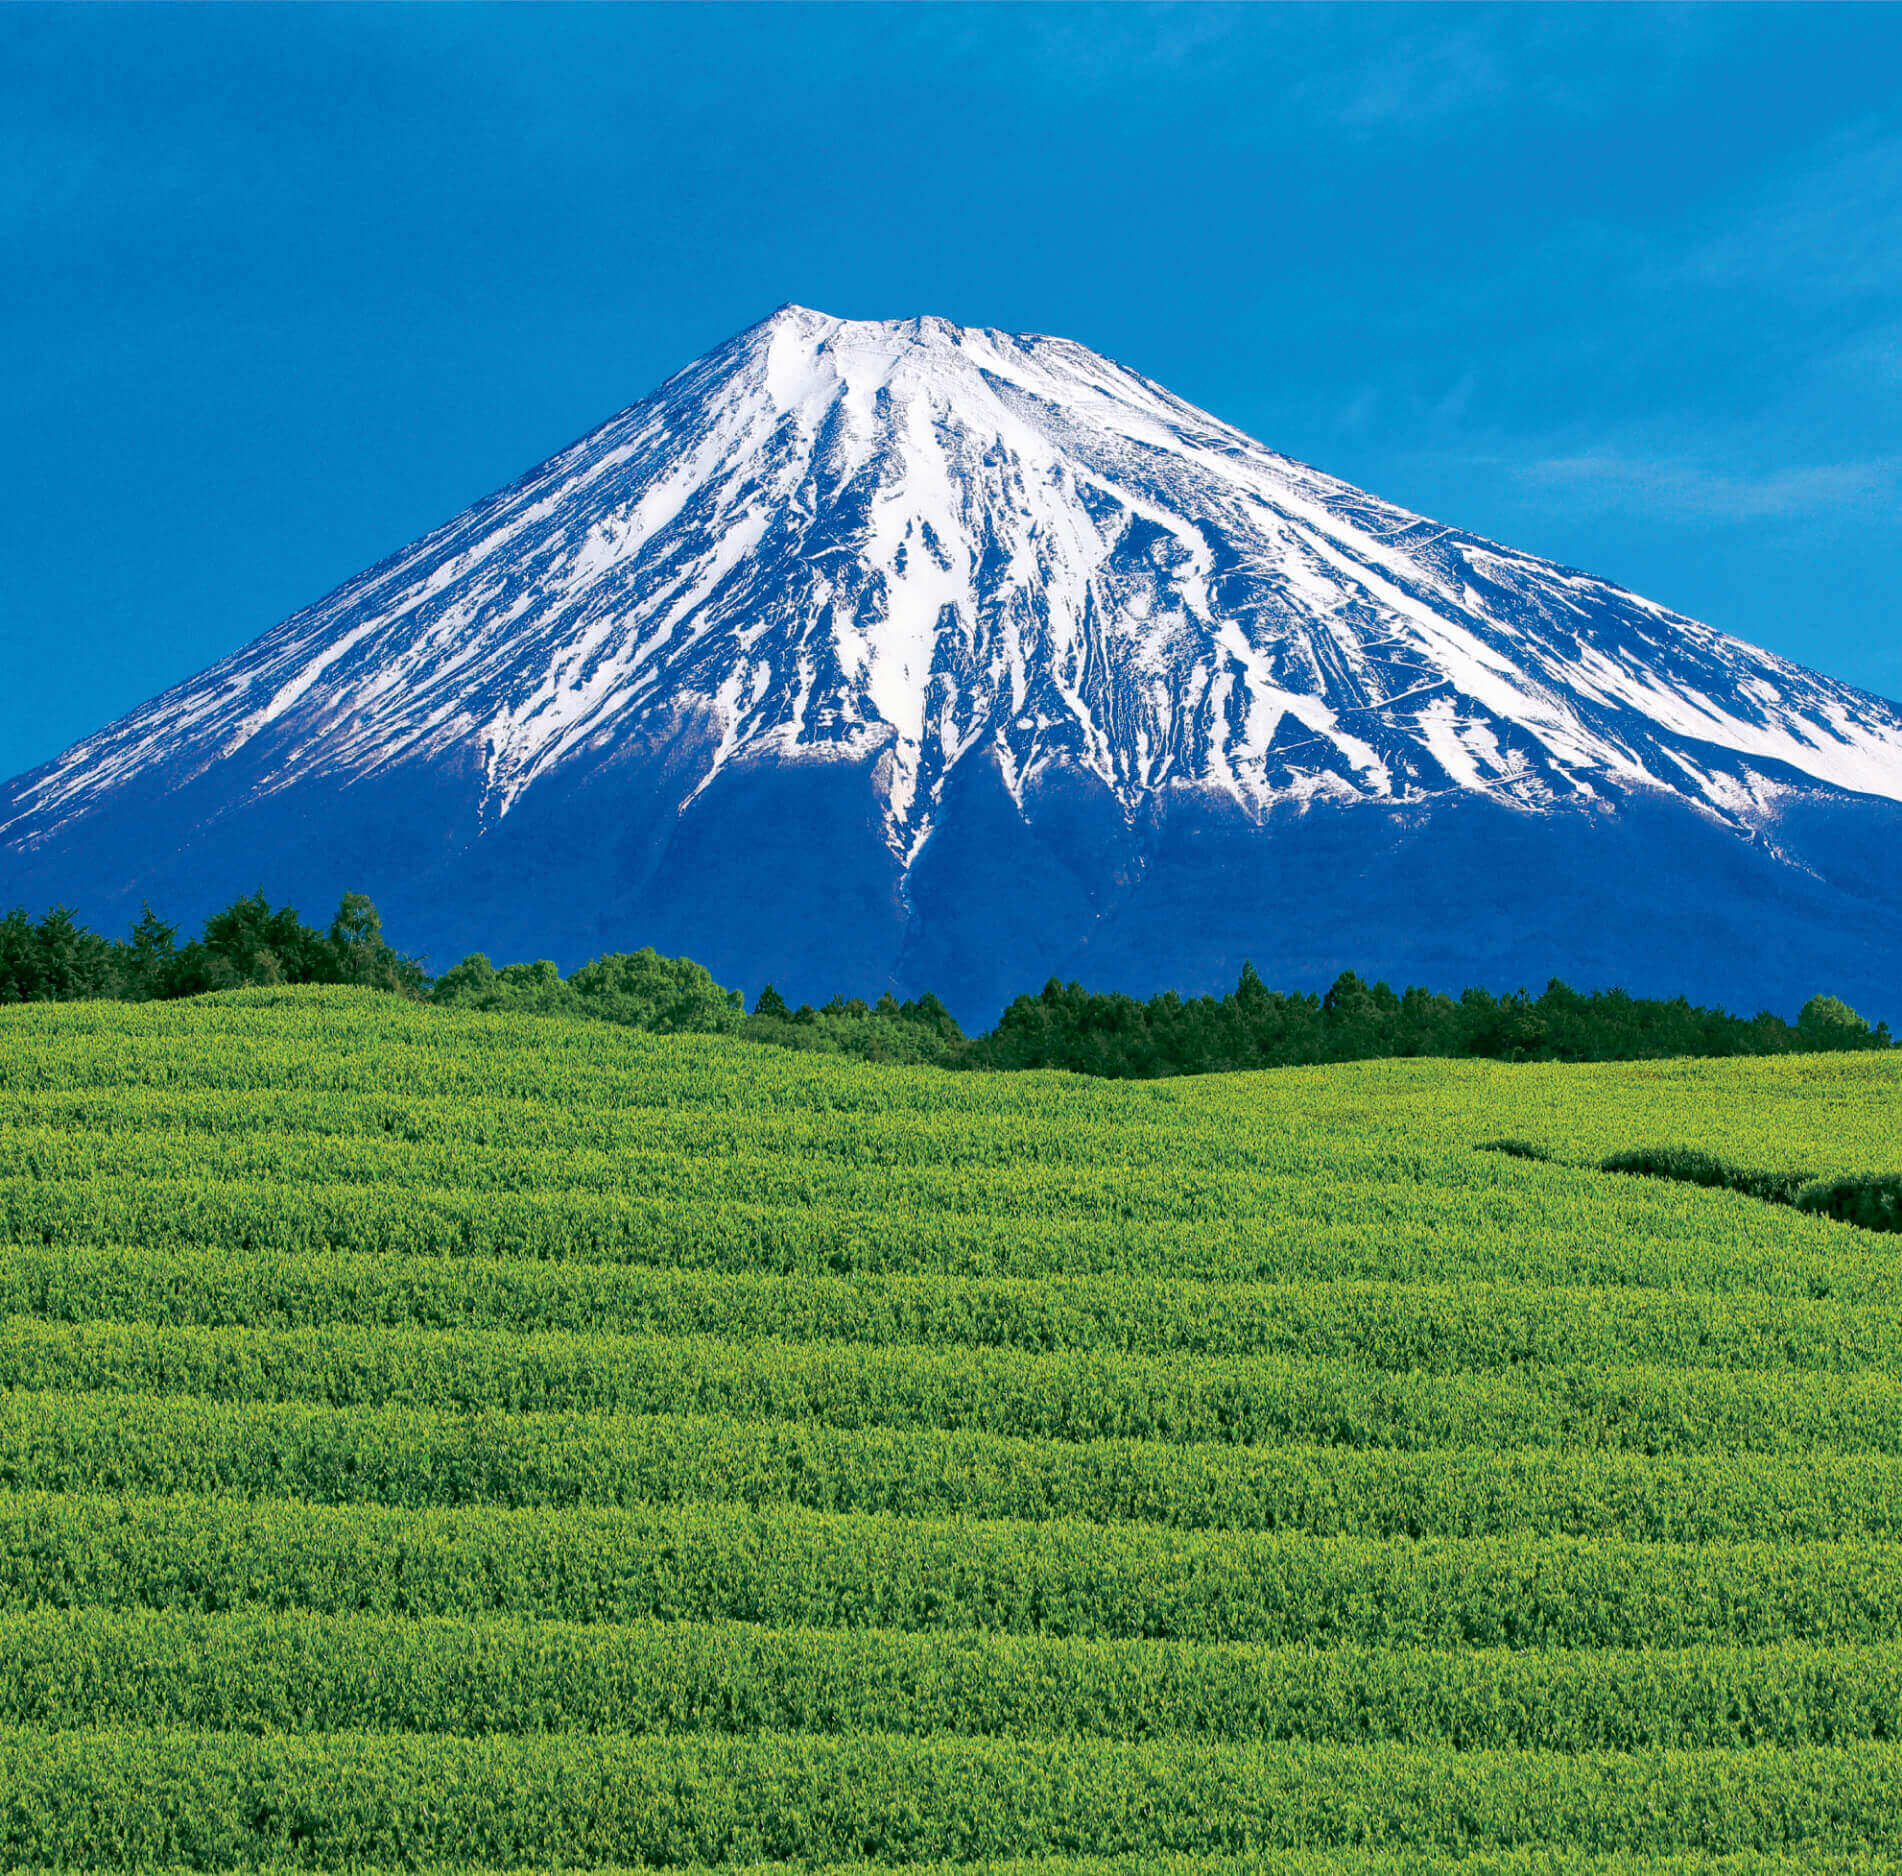 5-6月 大淵笹場より(静岡) 富士山(フィルムカレンダー) 2022年カレンダーの画像